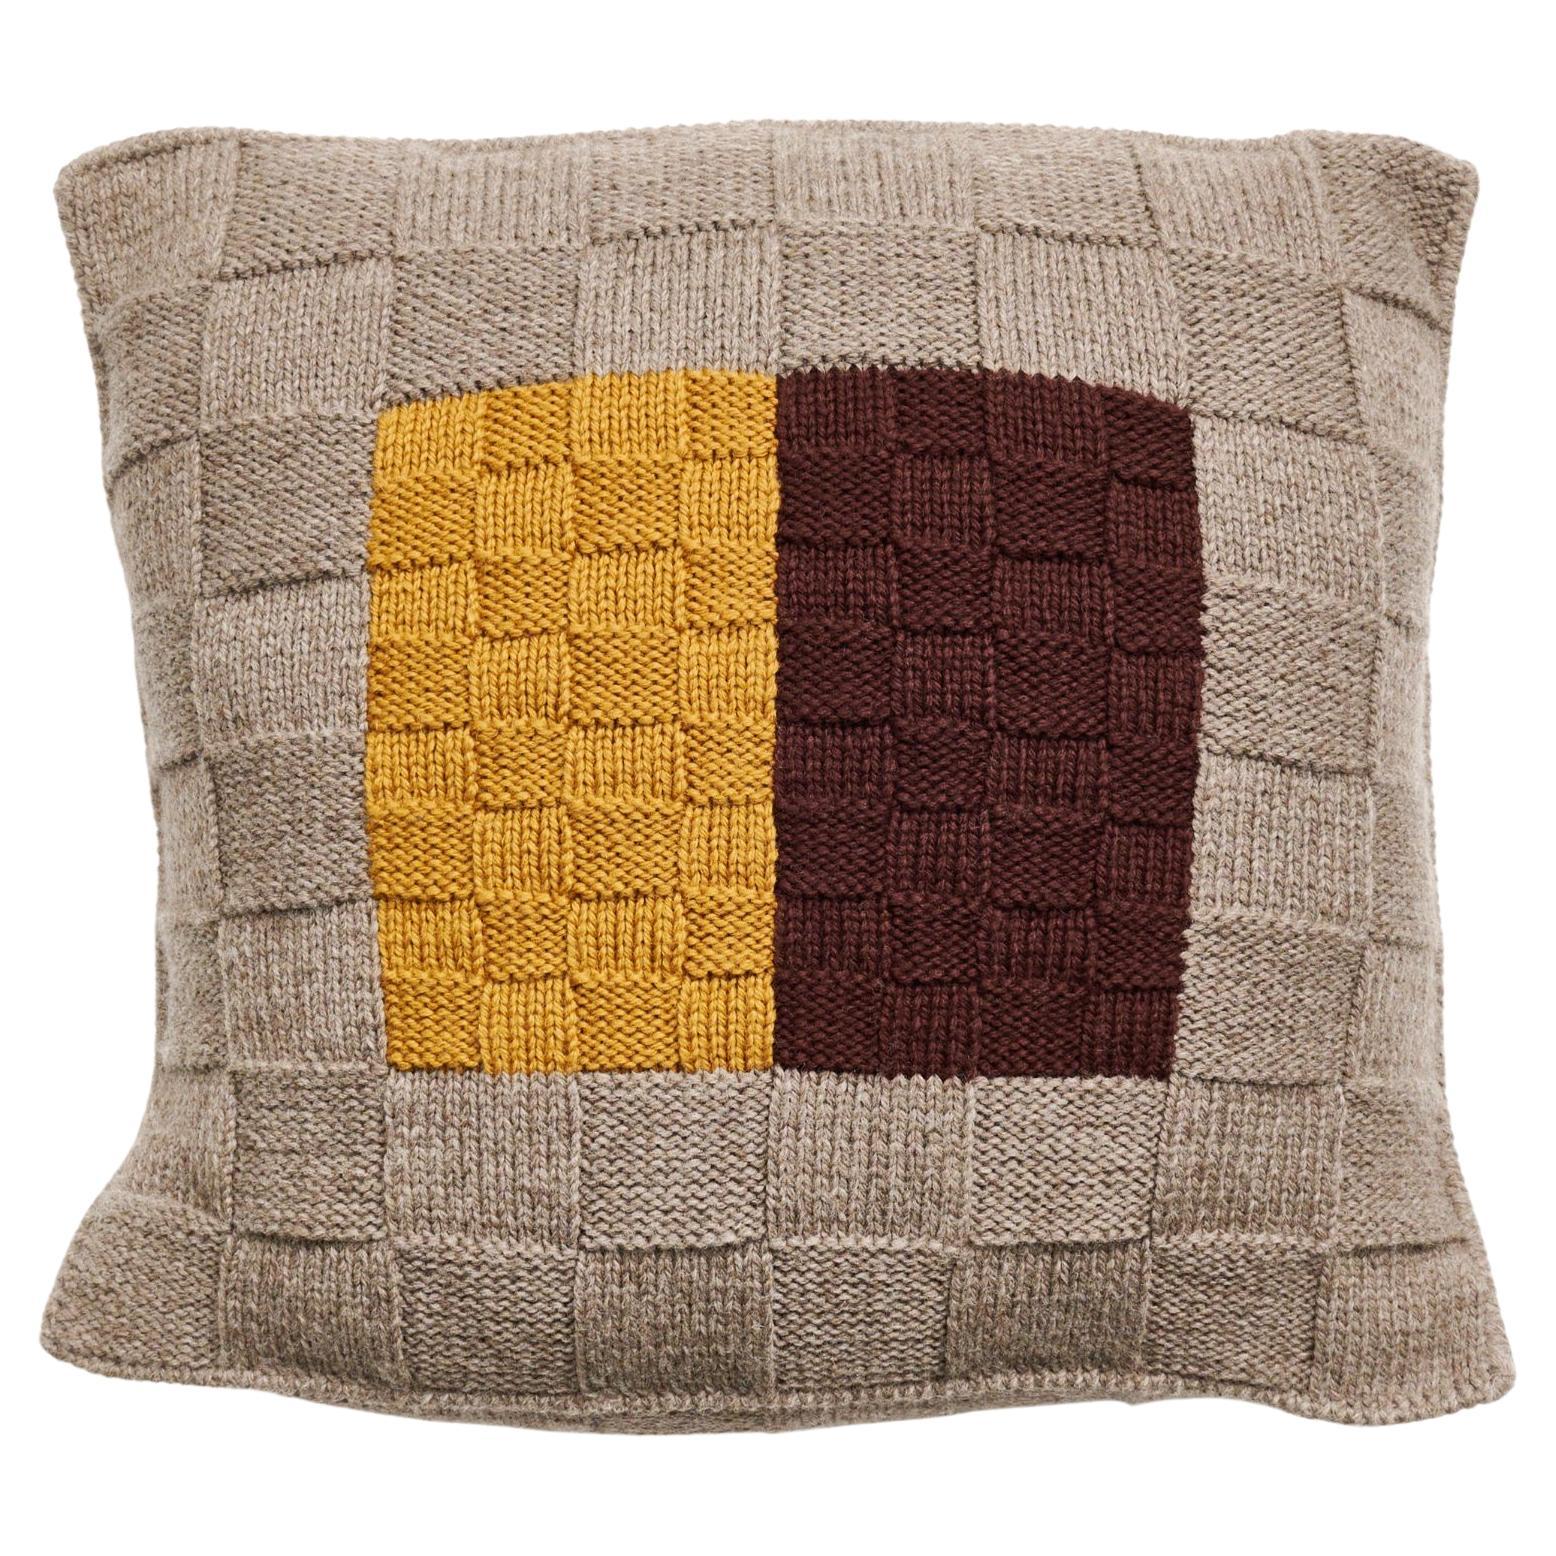 Coussin d'Andes tricoté à la main par des artisans péruviens en laine des Highlands des Andes